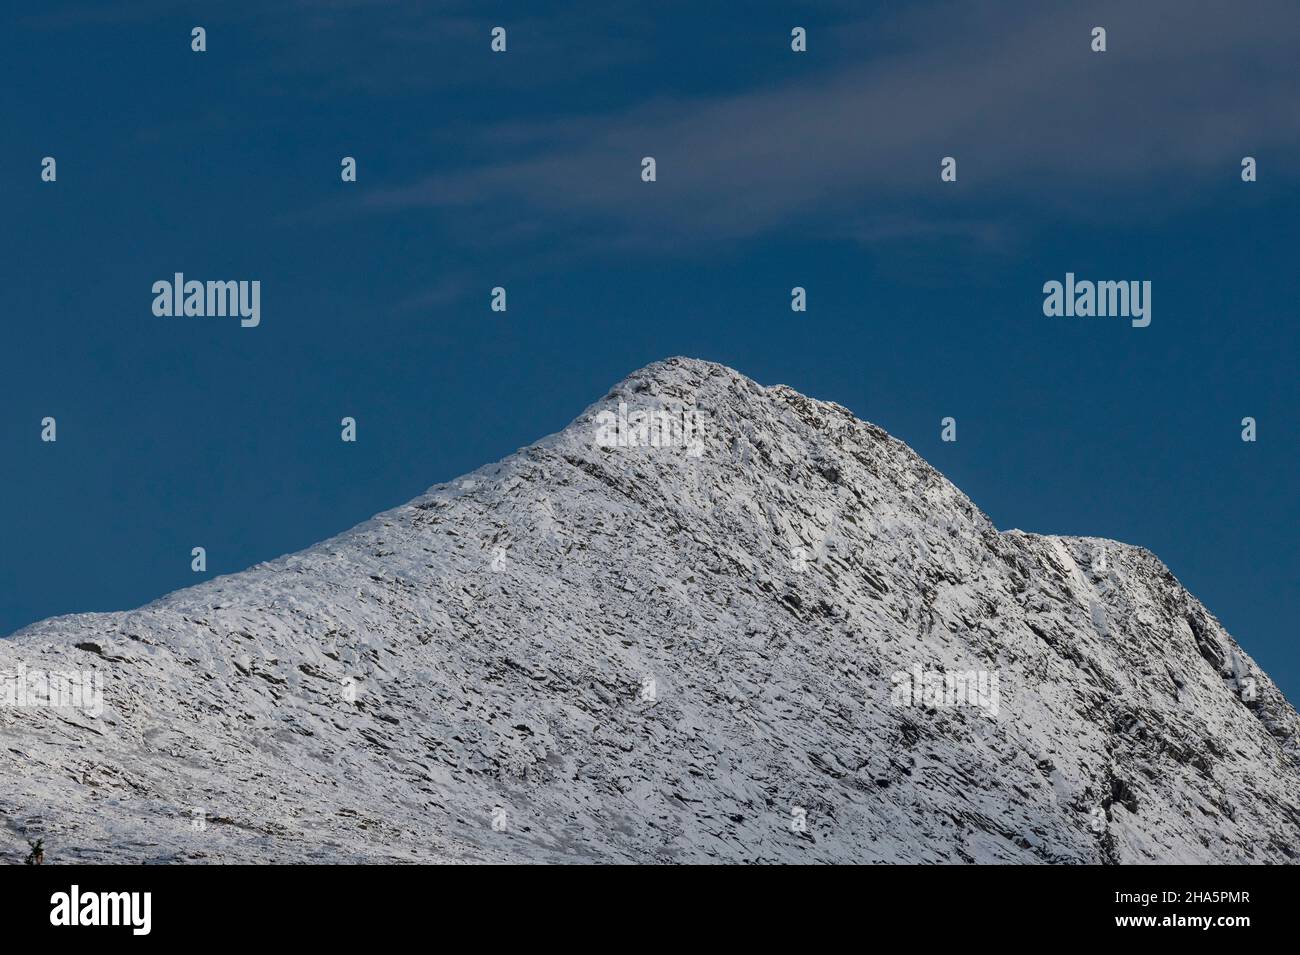 neve su un picco di montagna contro un cielo blu, lysfjord, nordland, norvegia Foto Stock